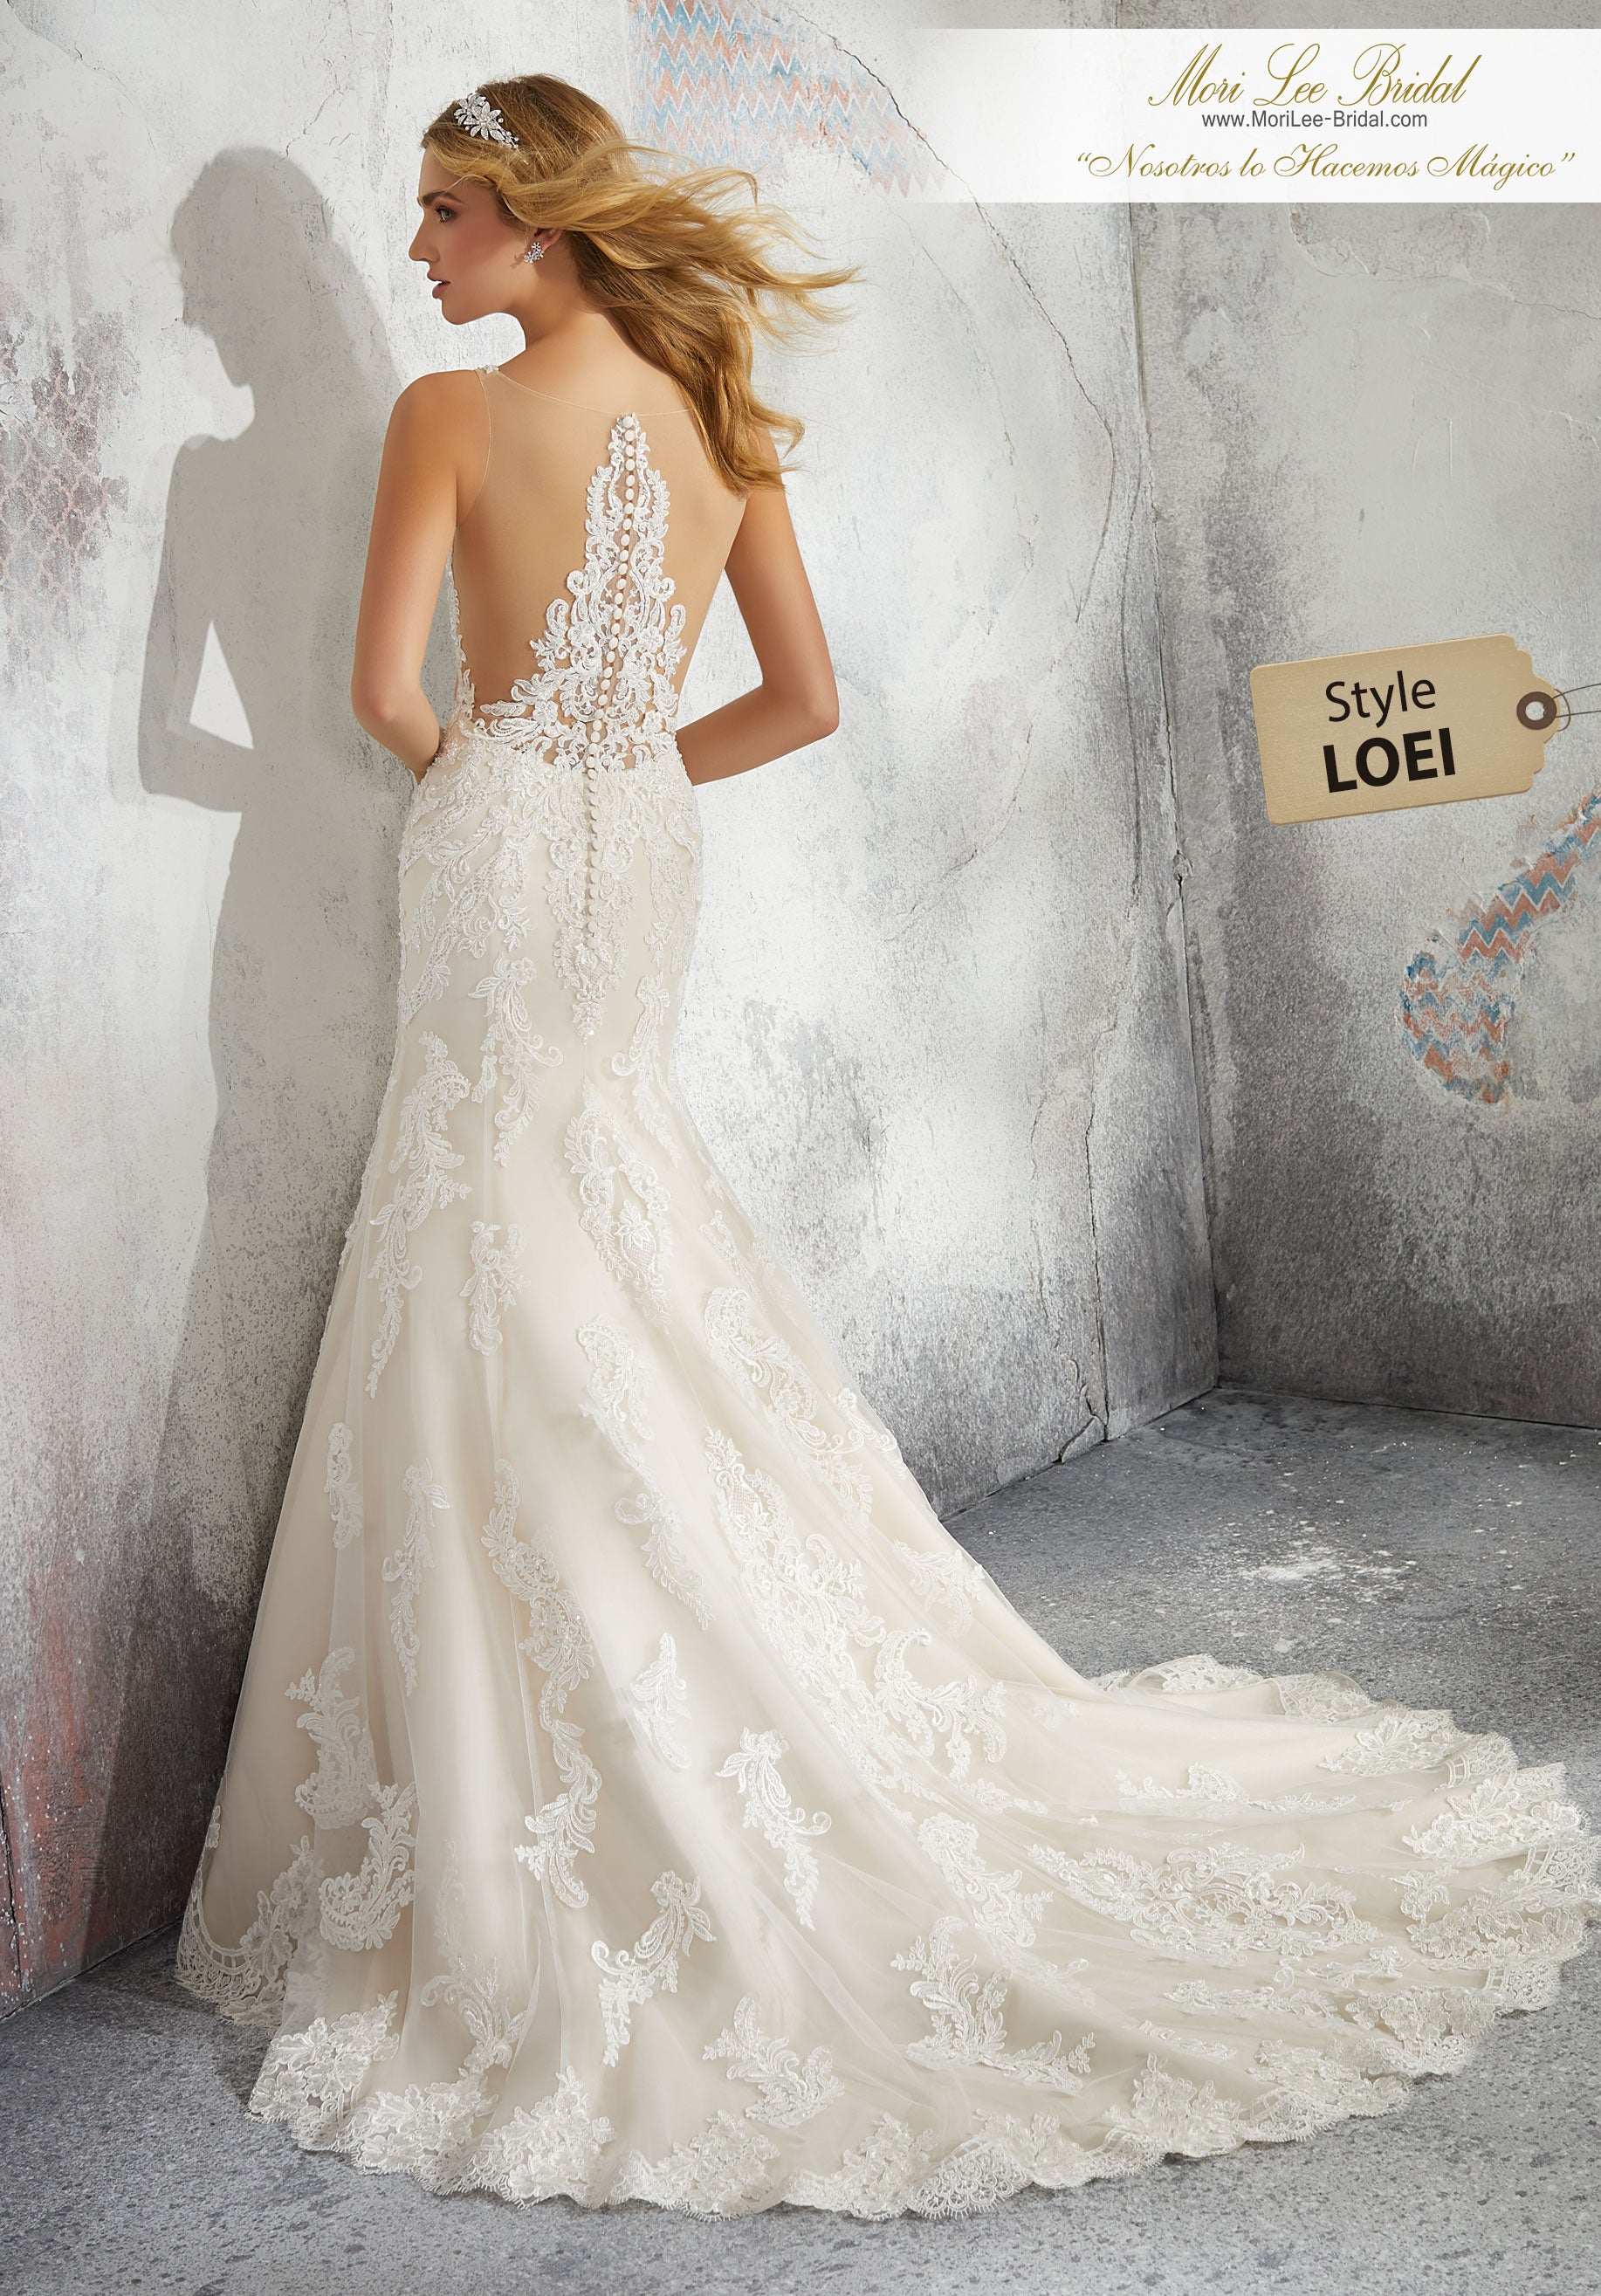 Vestido de novia con vuelo y corte clásico con aplicaciones de encaje de Alençon con pedrería en la red y una impresionante espalda ilusión. LOEI*